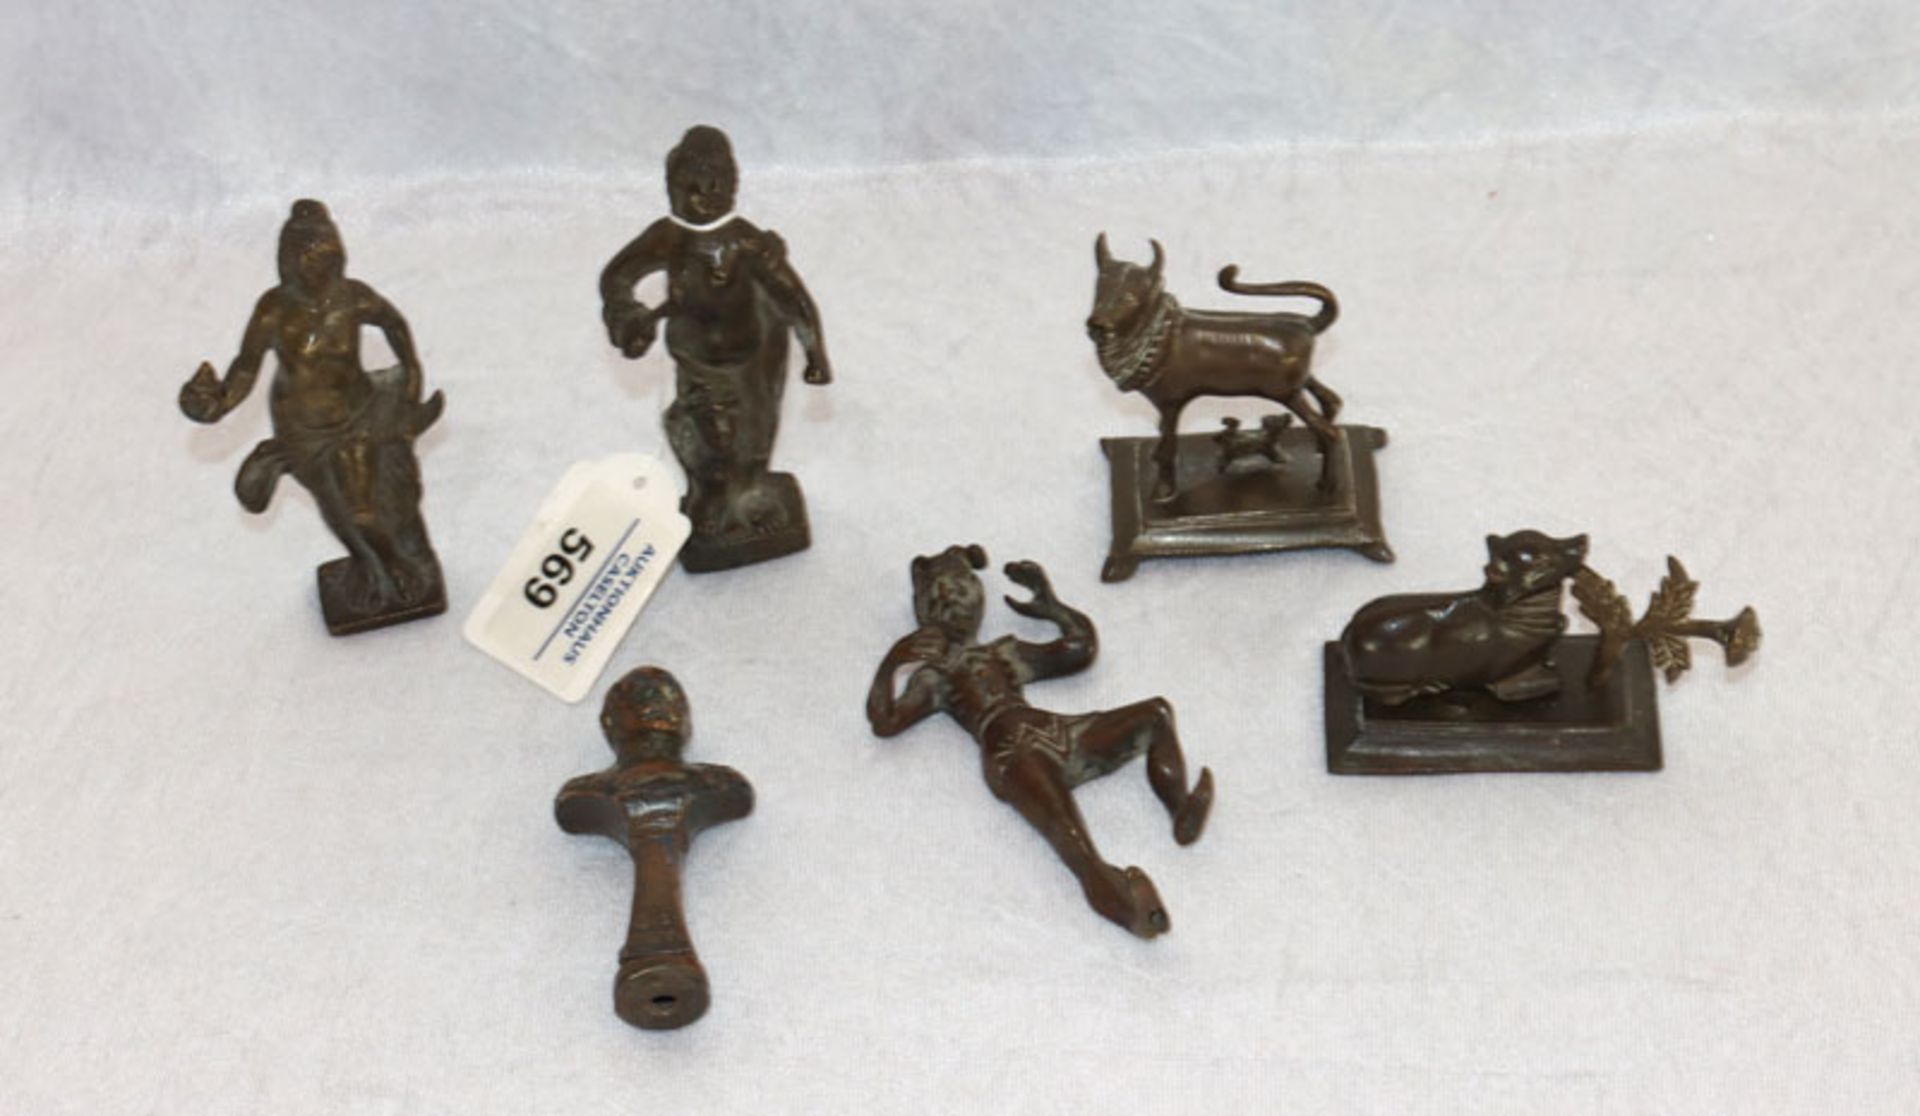 Konvolut von Metall Figuren und Tieren, H 4,5/10,5 cm, teils beschädigt, teils nicht komplett